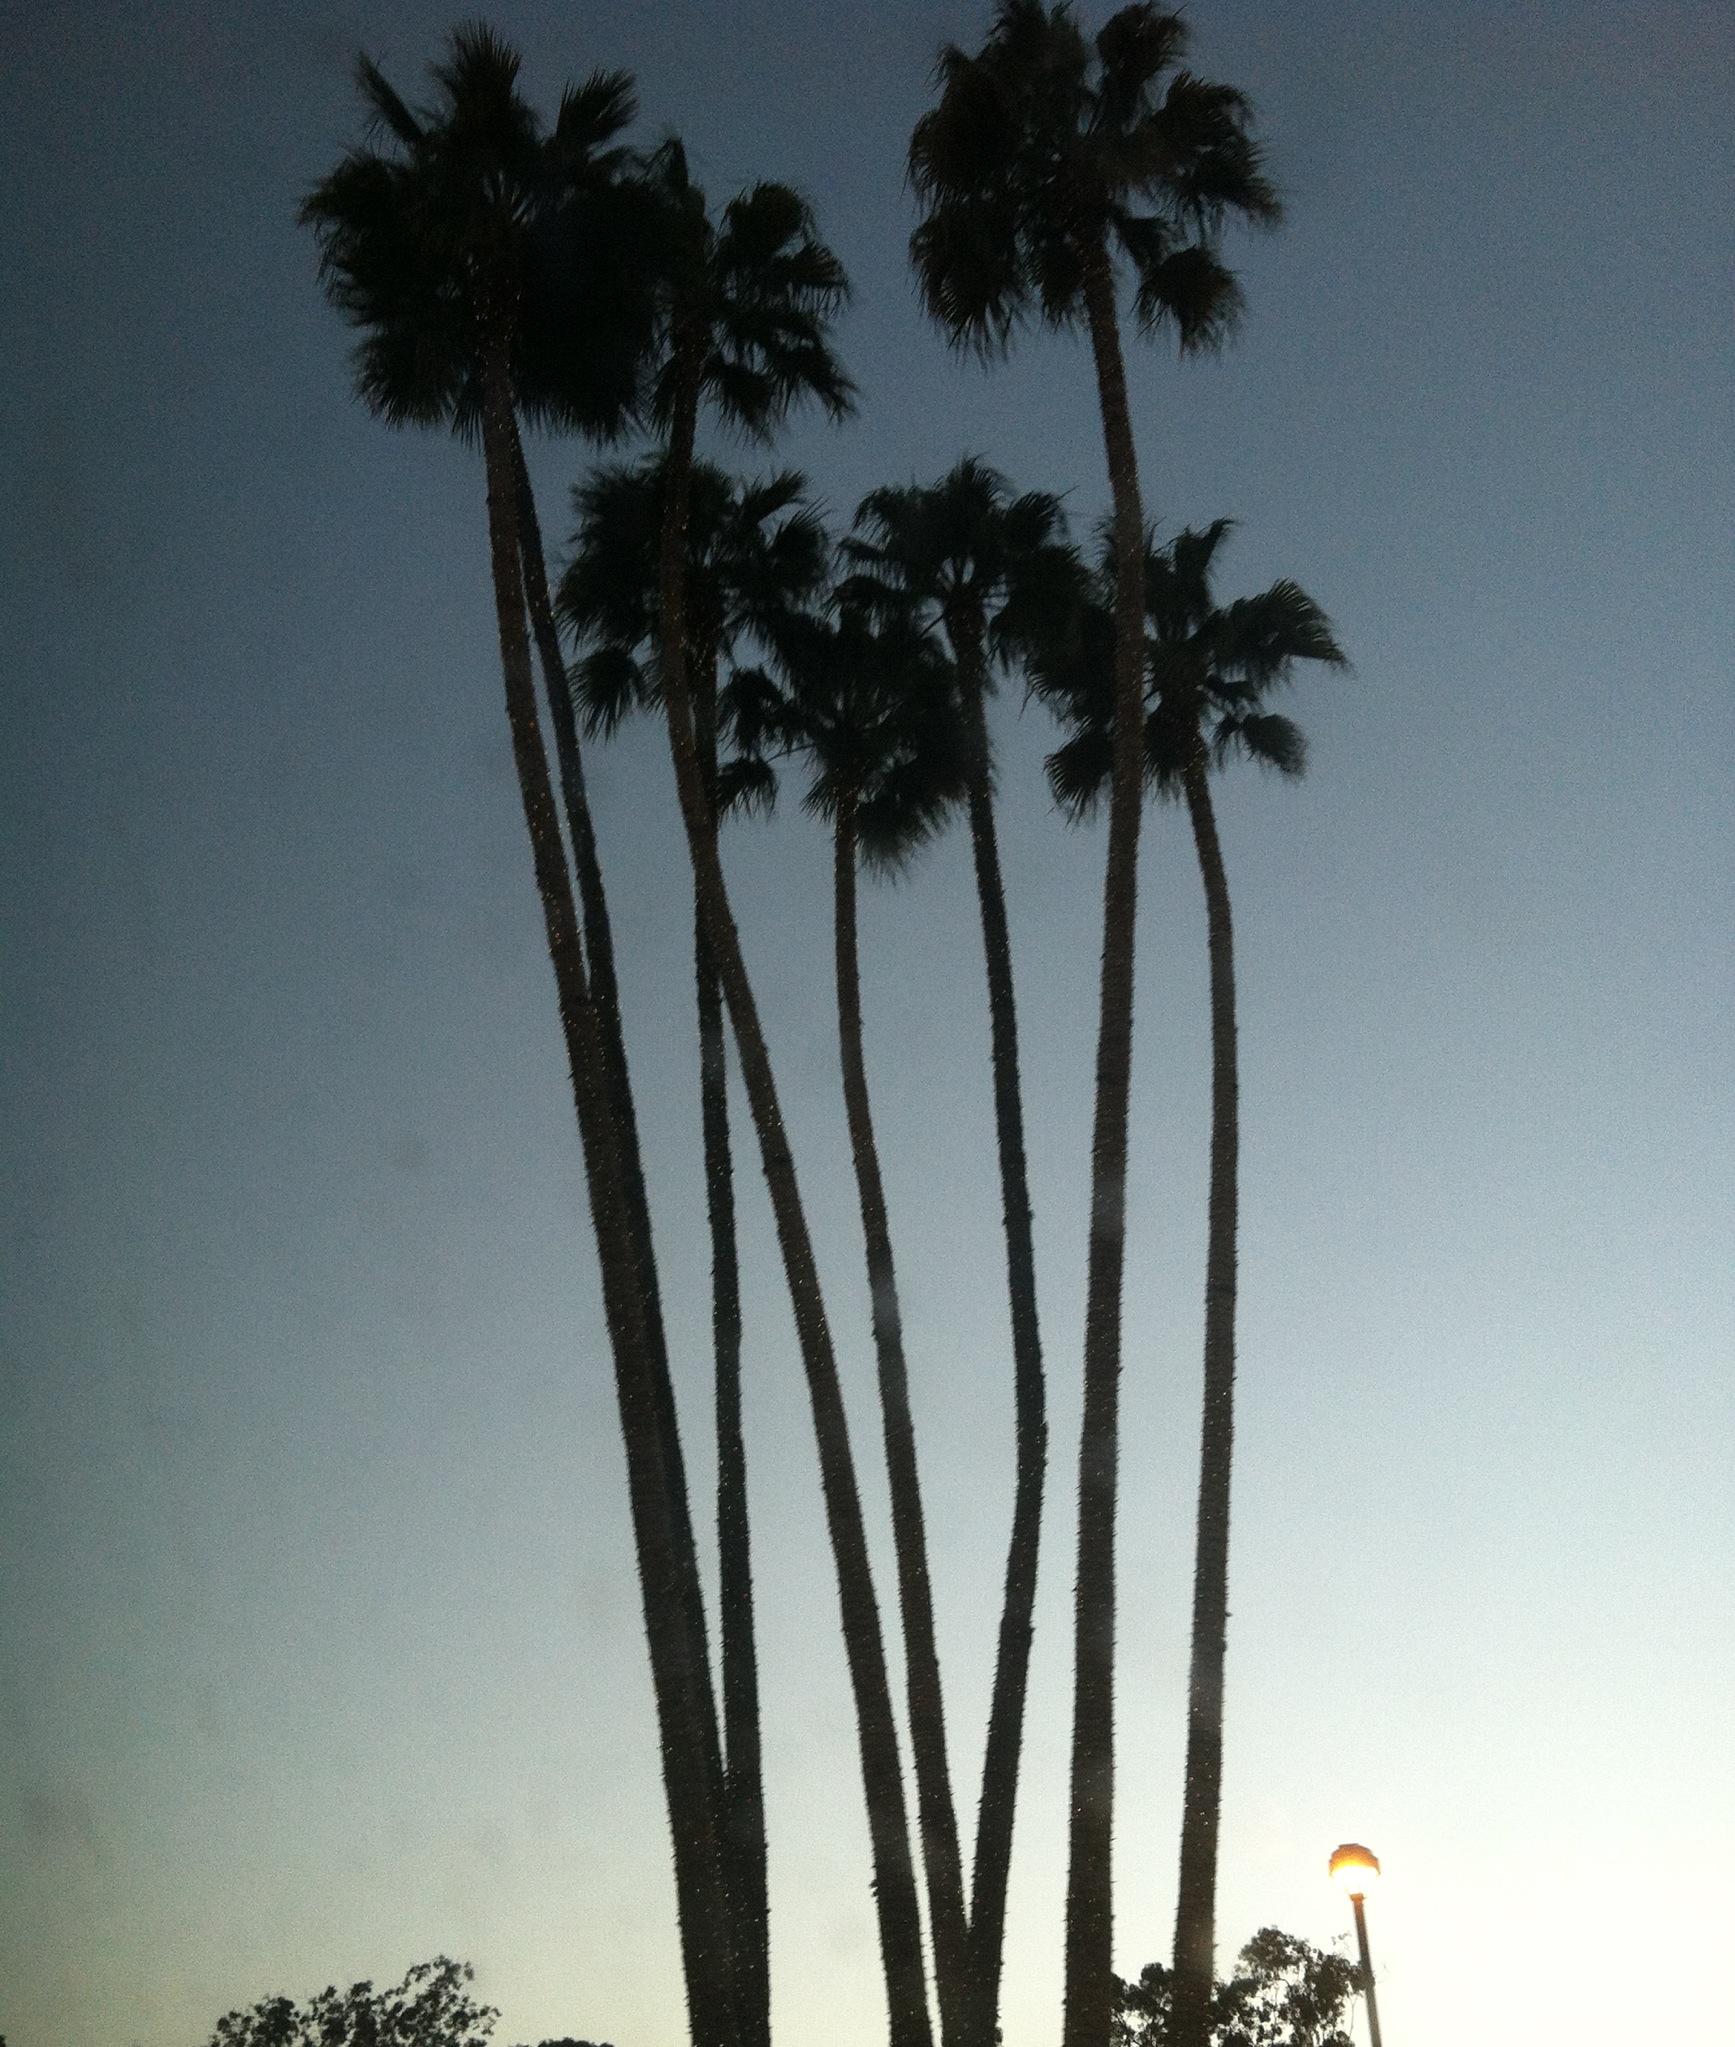 PALM TREES | flourish like a palm